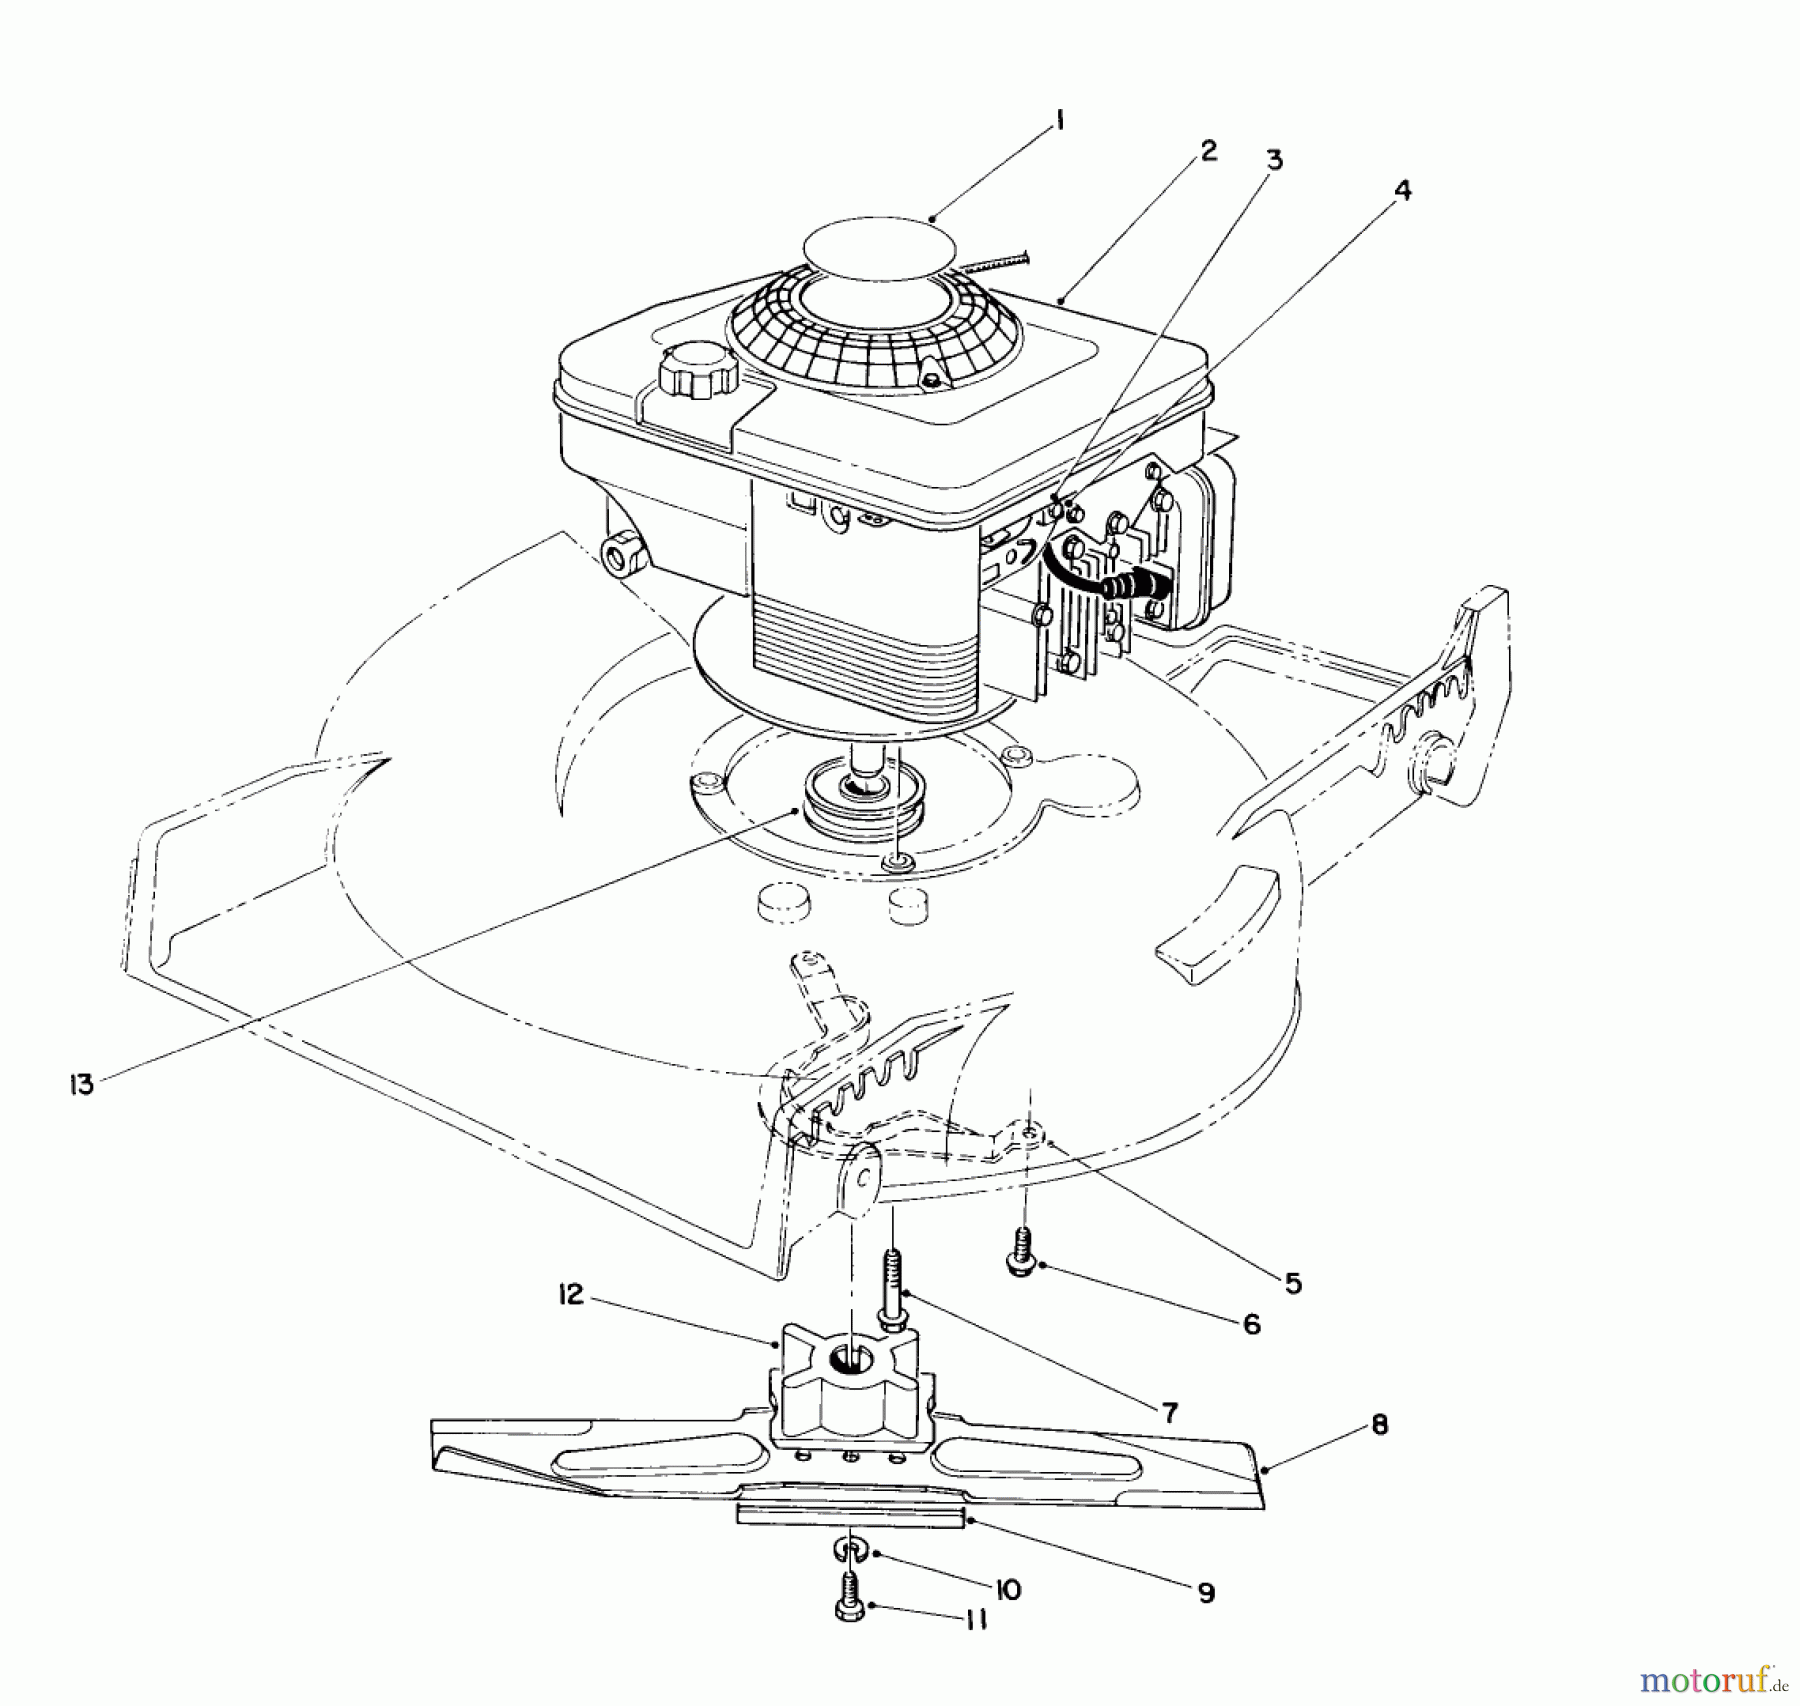  Toro Neu Mowers, Walk-Behind Seite 1 20666 - Toro Lawnmower, 1990 (0000001-0999999) ENGINE ASSEMBLY